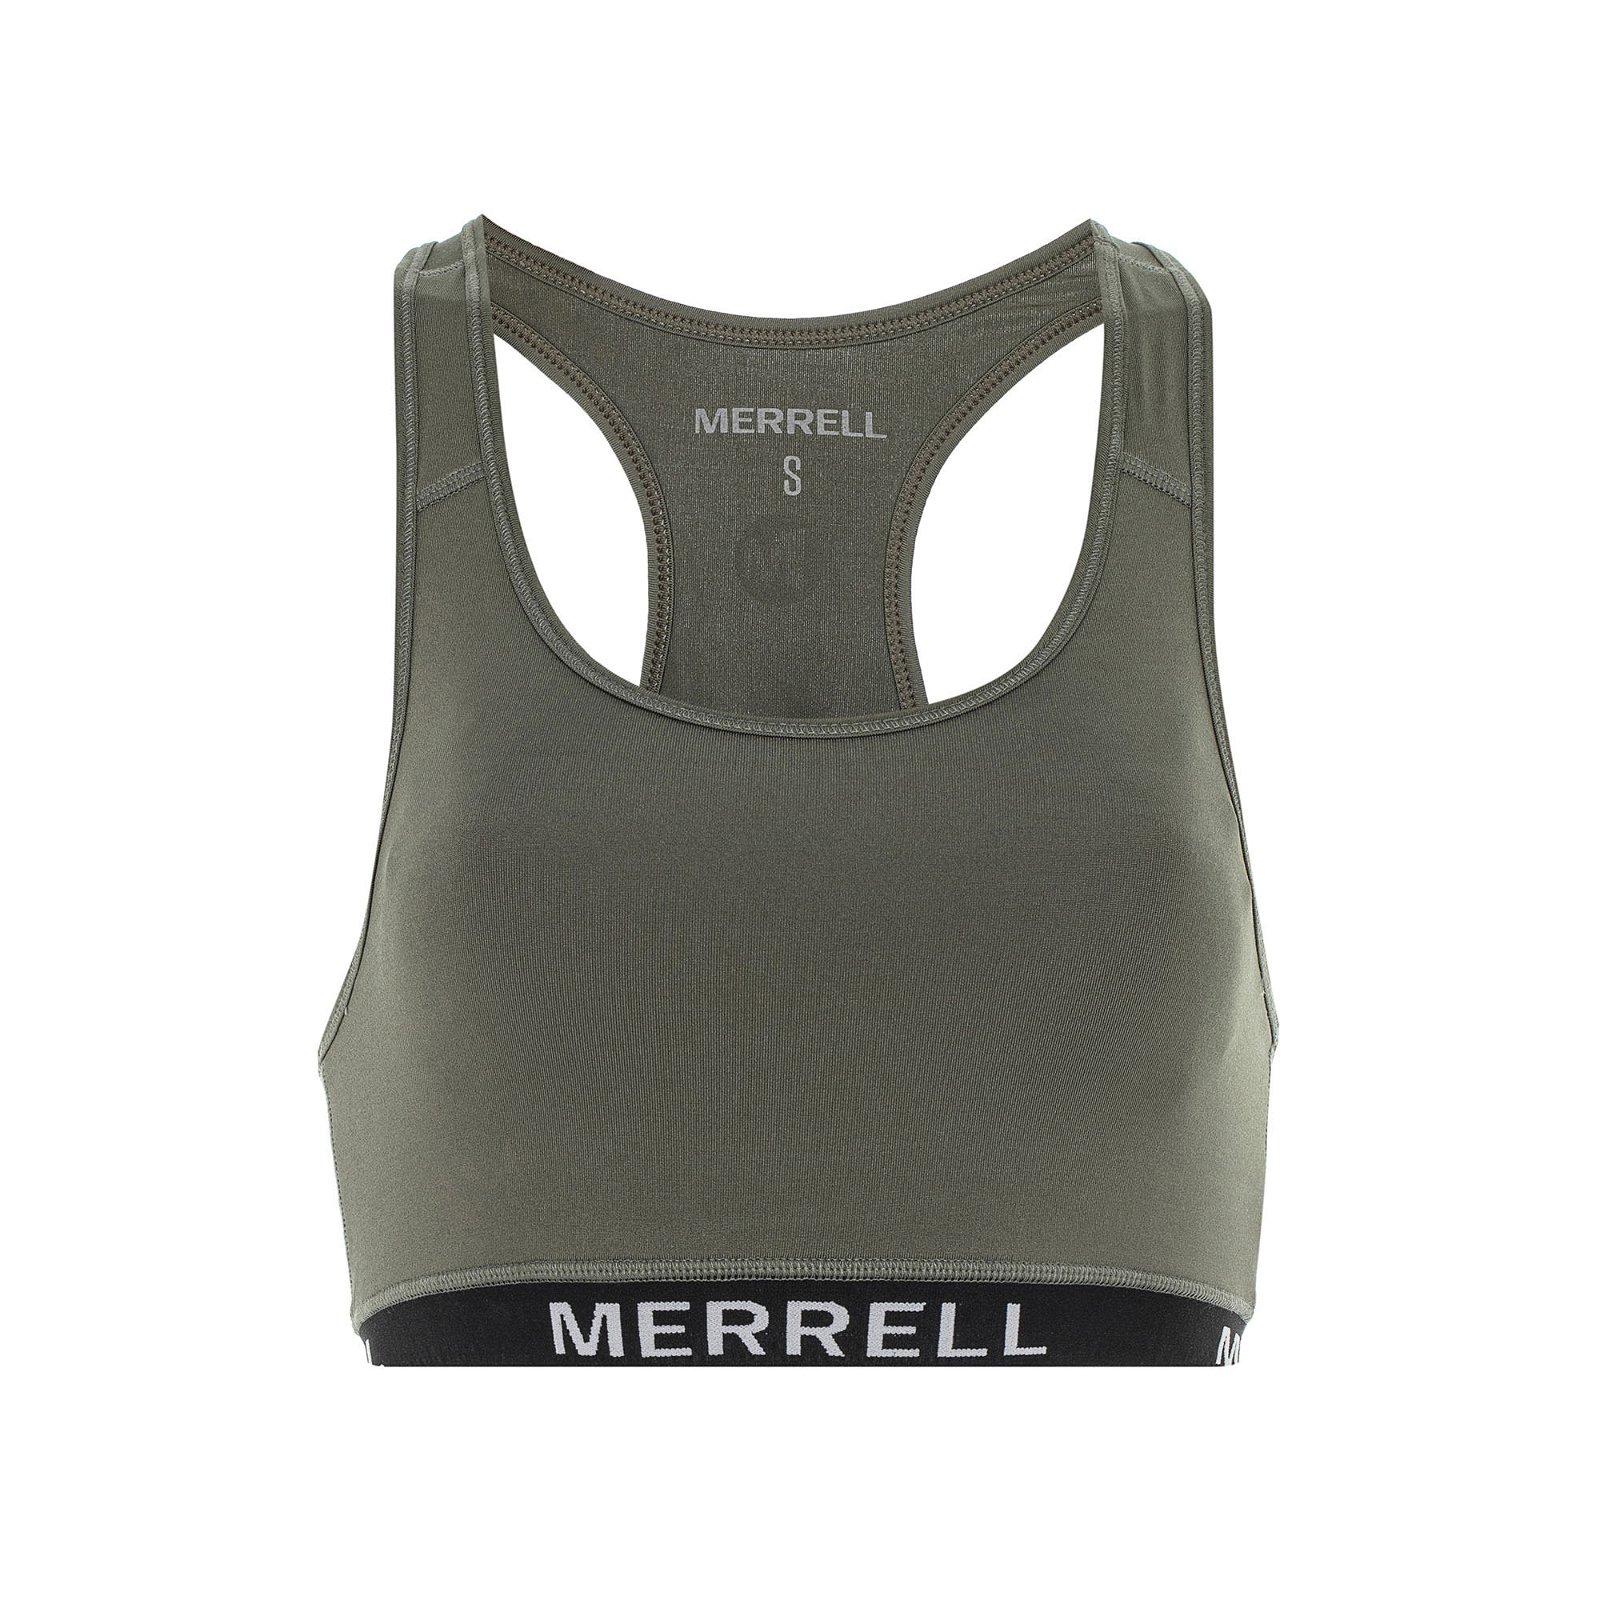 Merrell Begin Kadın Fitness Bra - Haki - 1